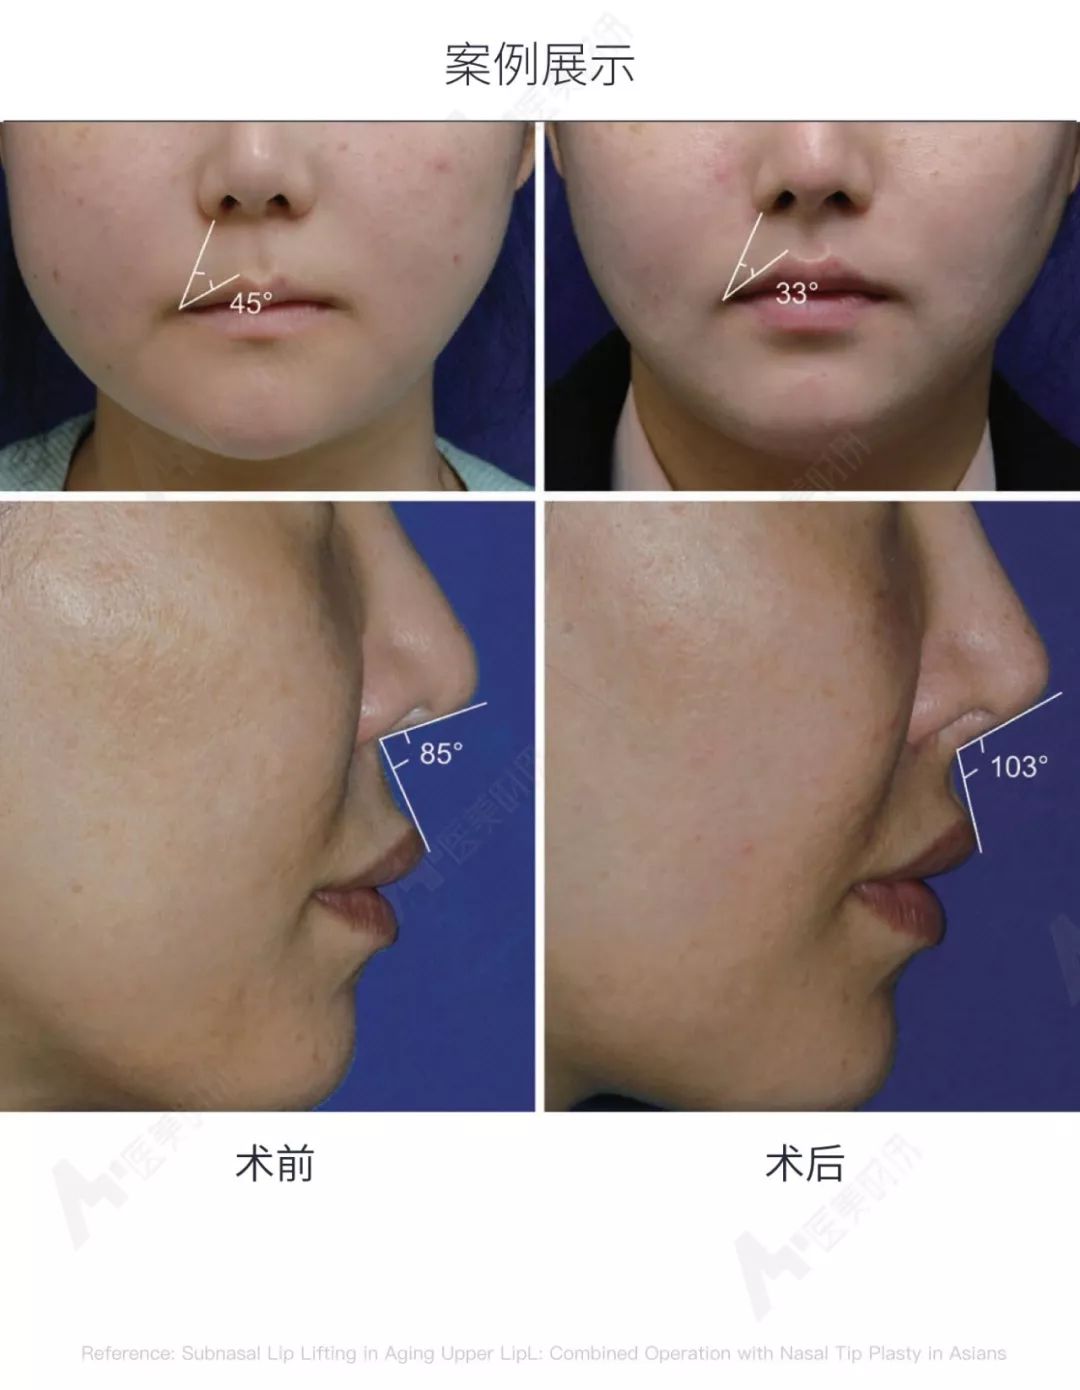 韩国人中缩短术同时提升上唇与鼻尖